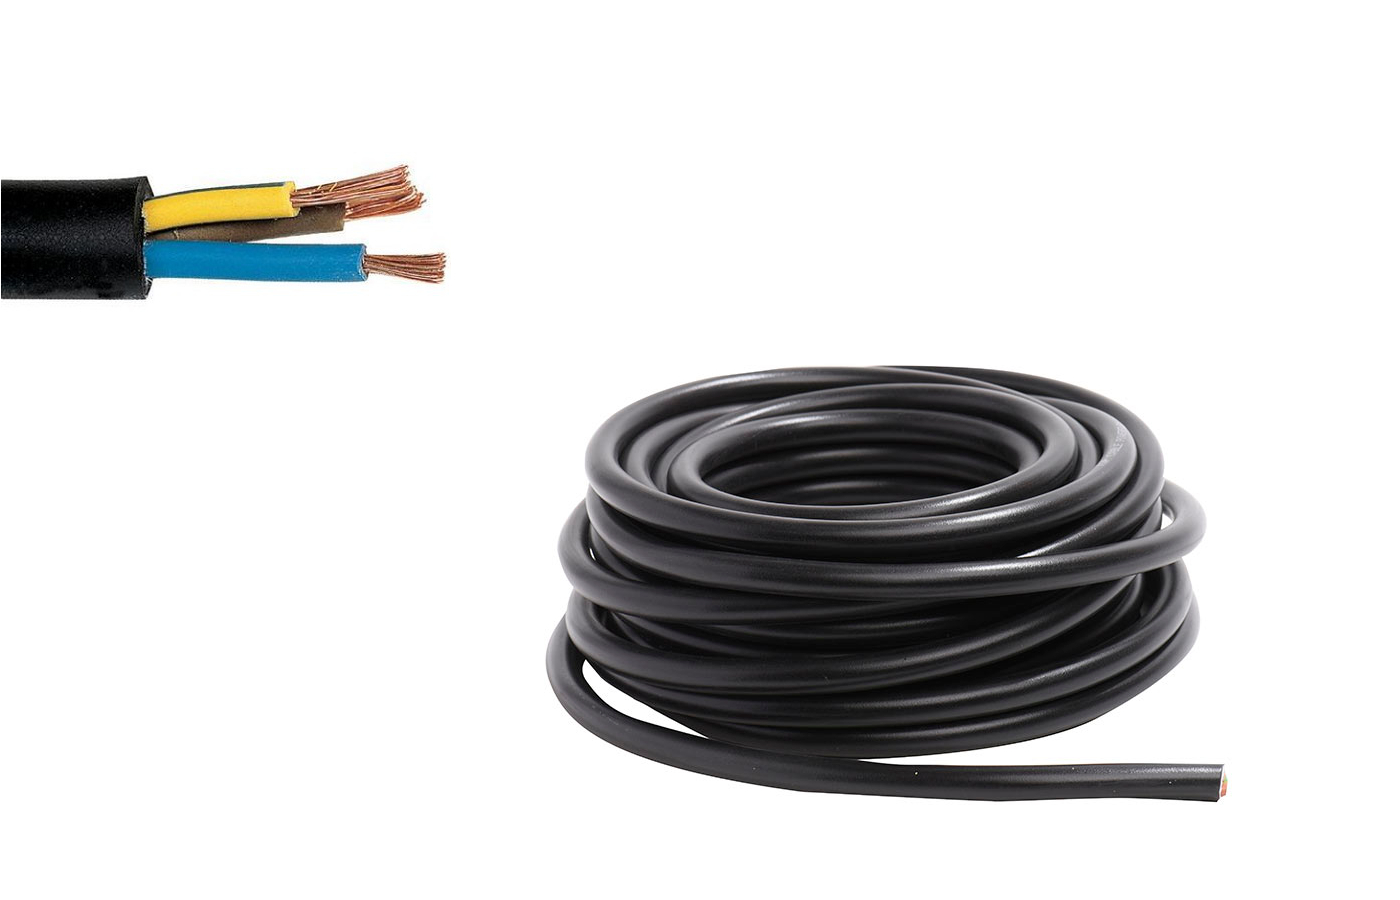 Cable 3G6mm2 - 3G10mm2 pour branchement électrique de la plaque de cuisson 